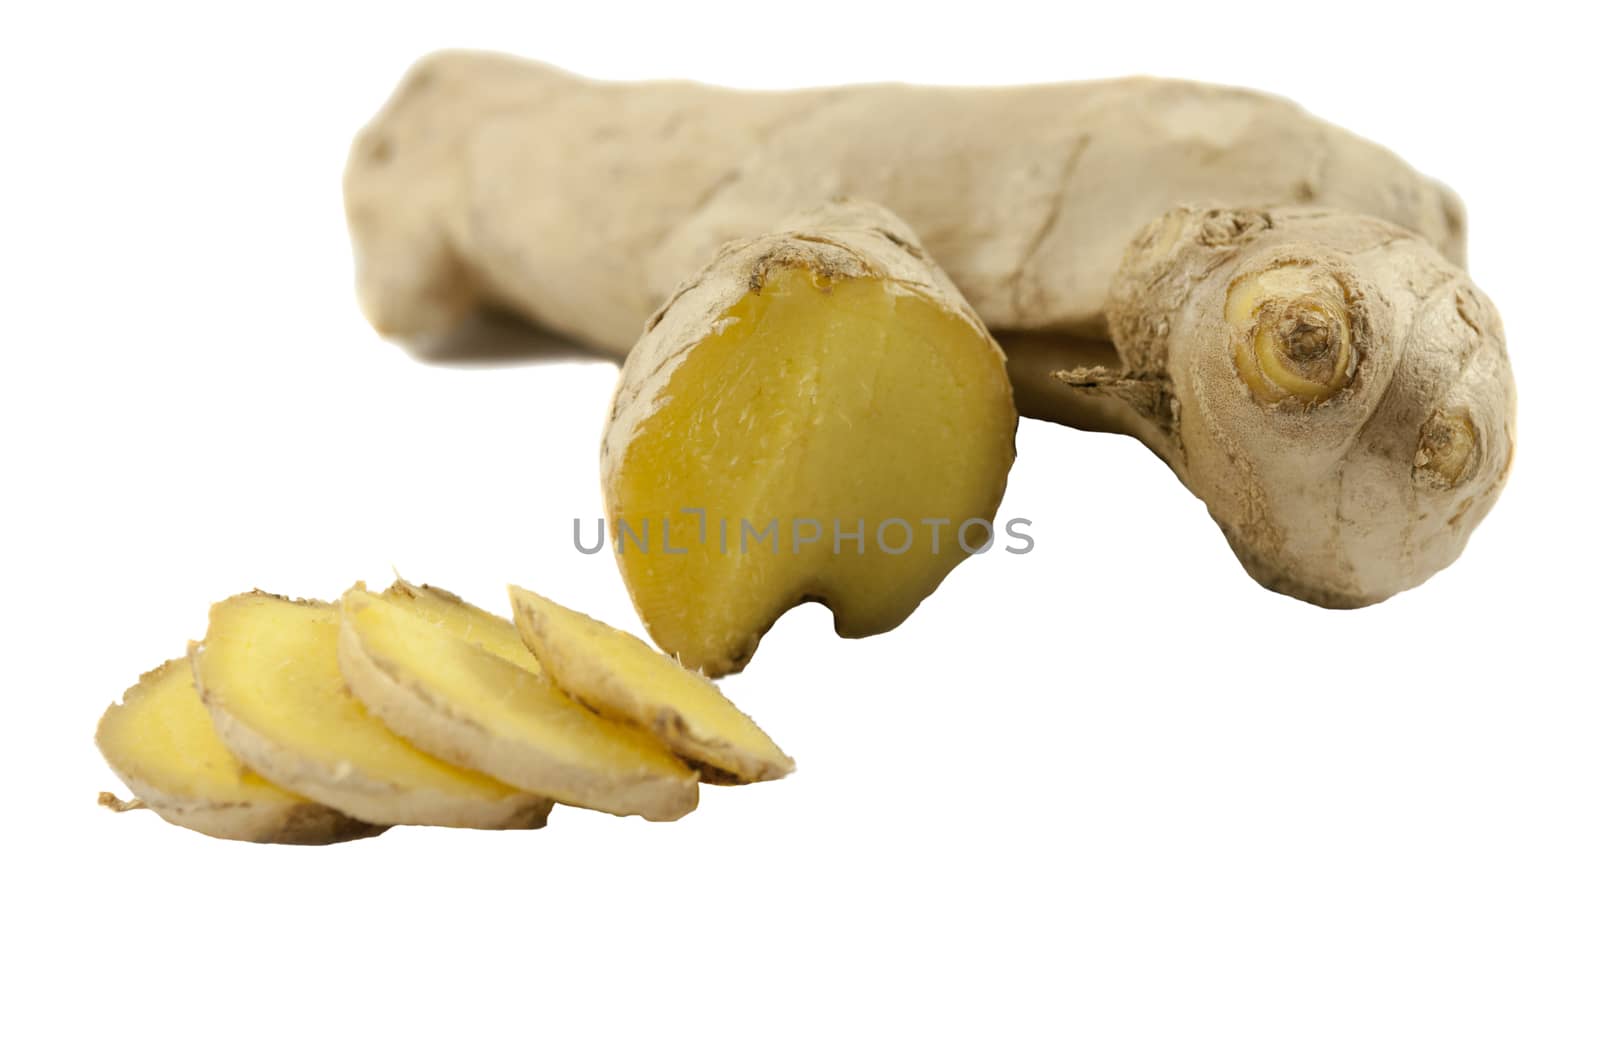 Ginger root by vangelis